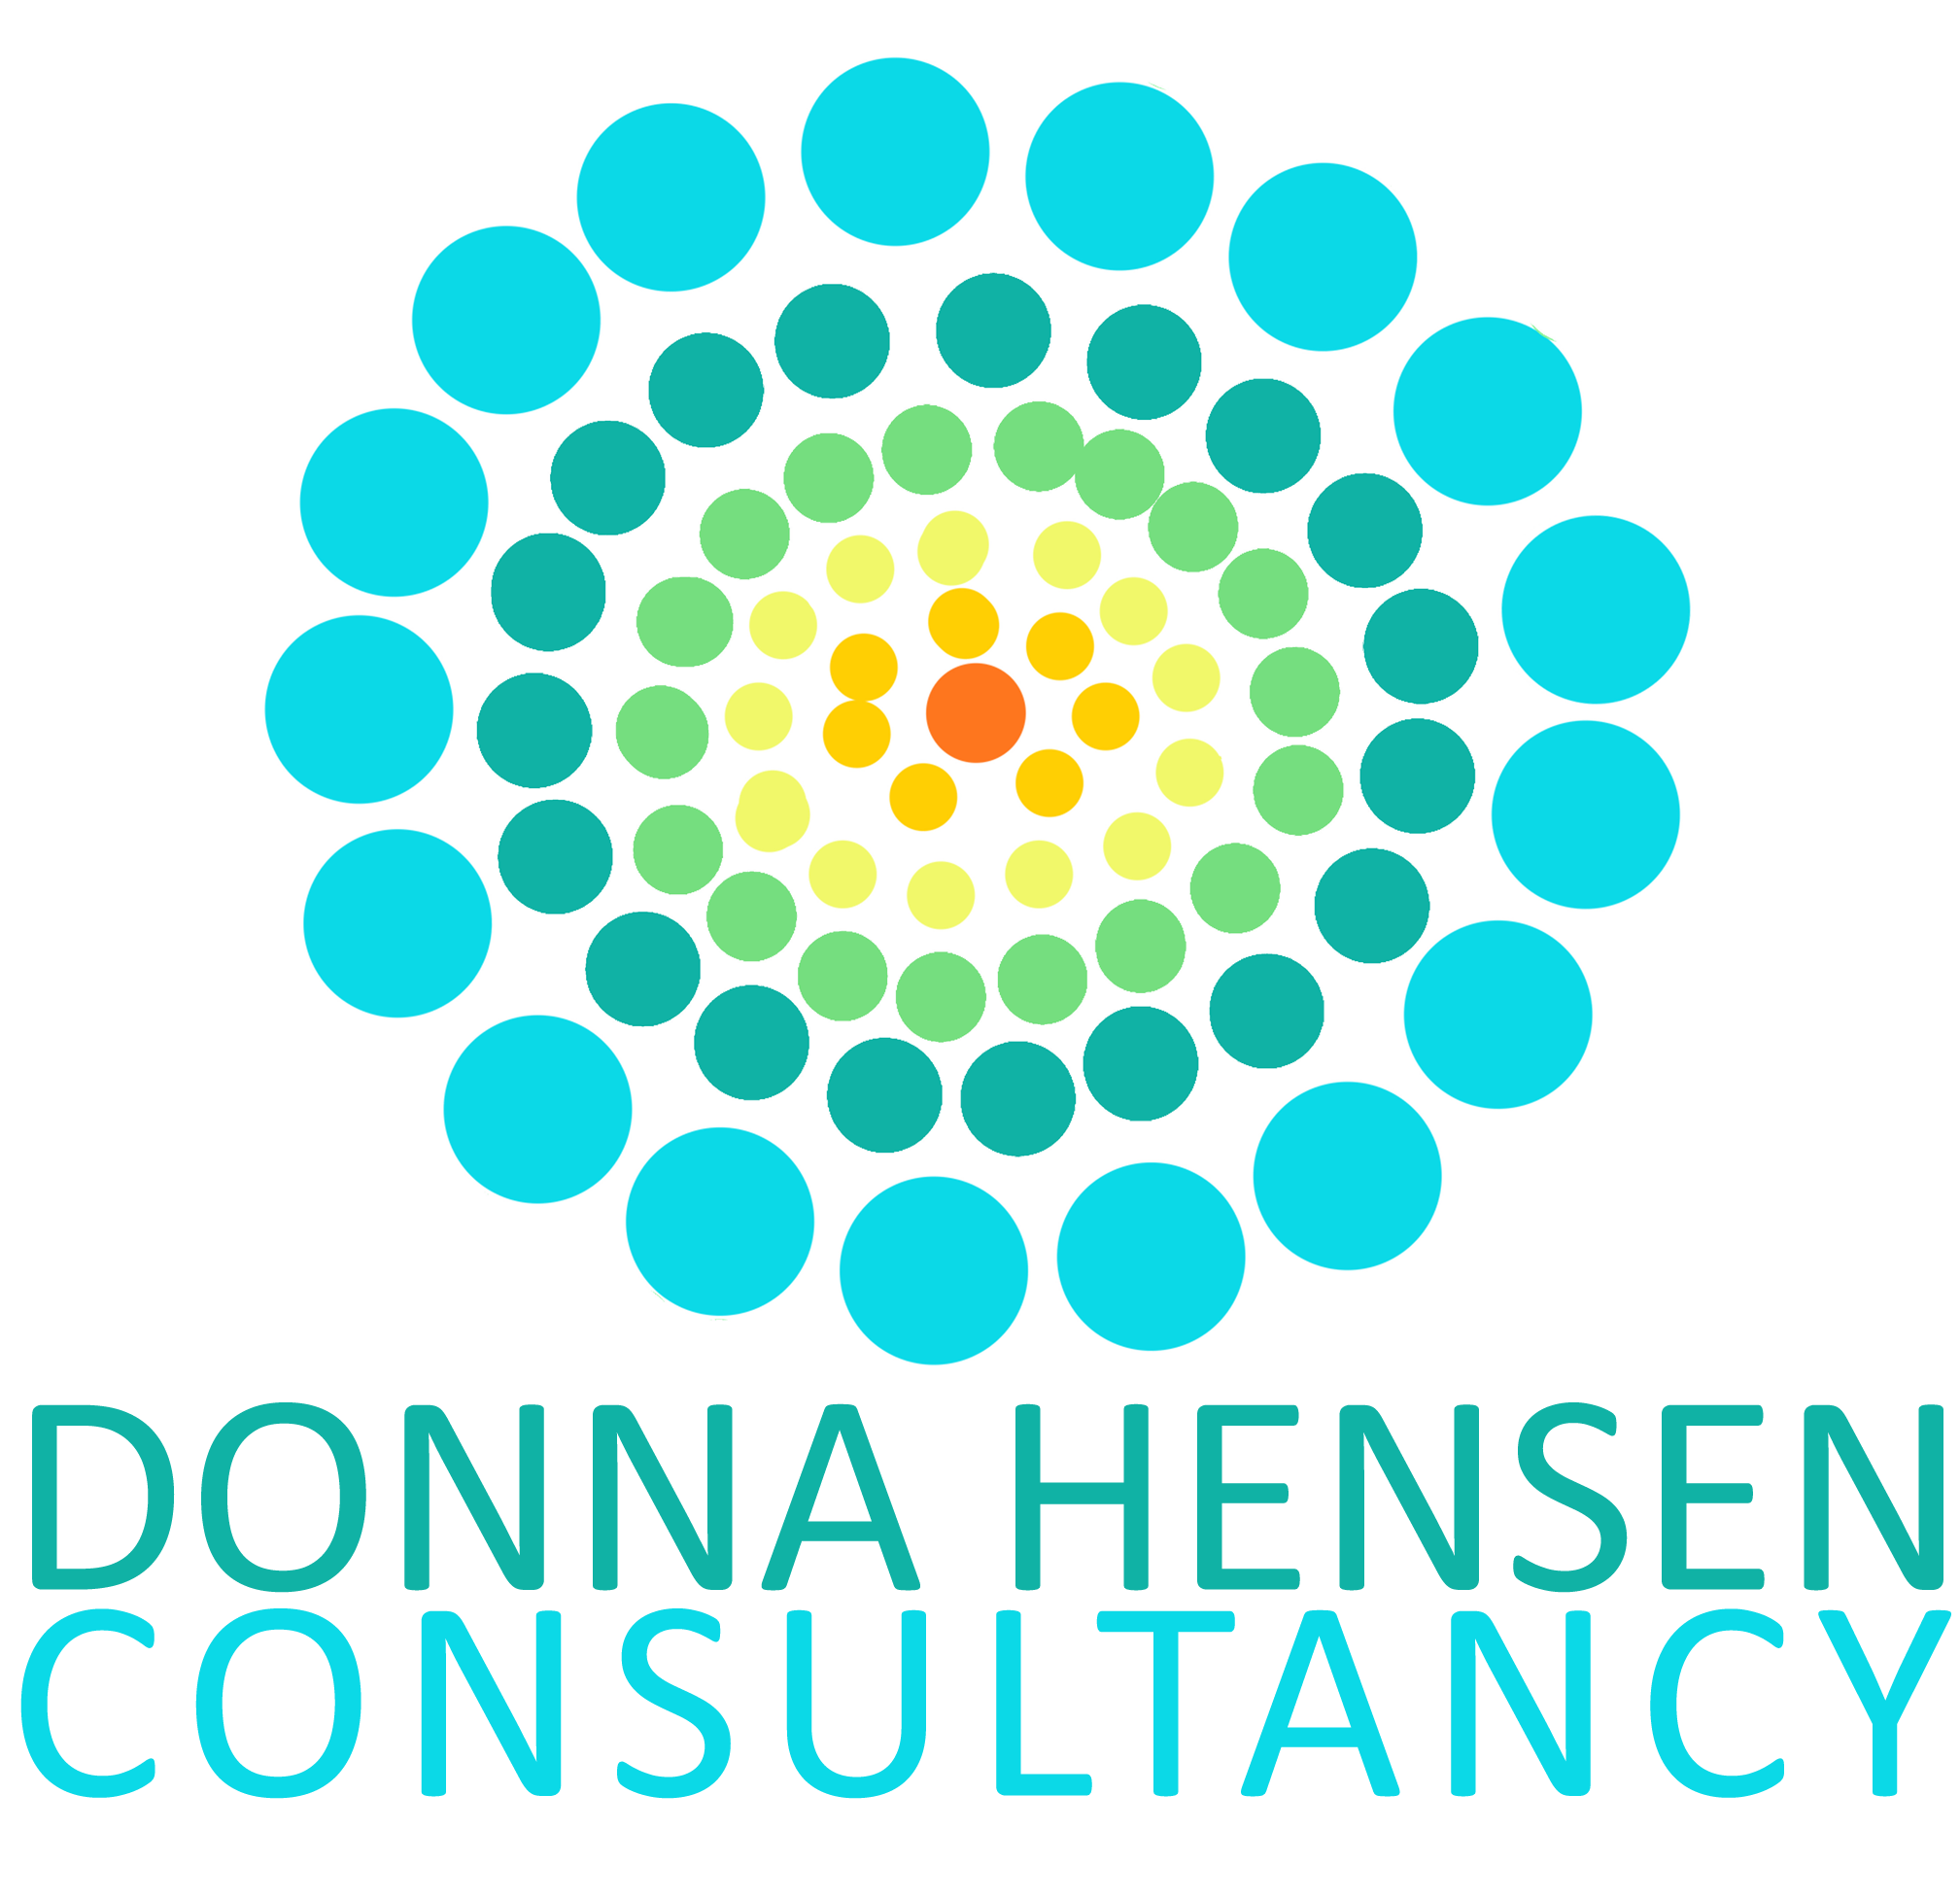 Donna Hensen Consultancy